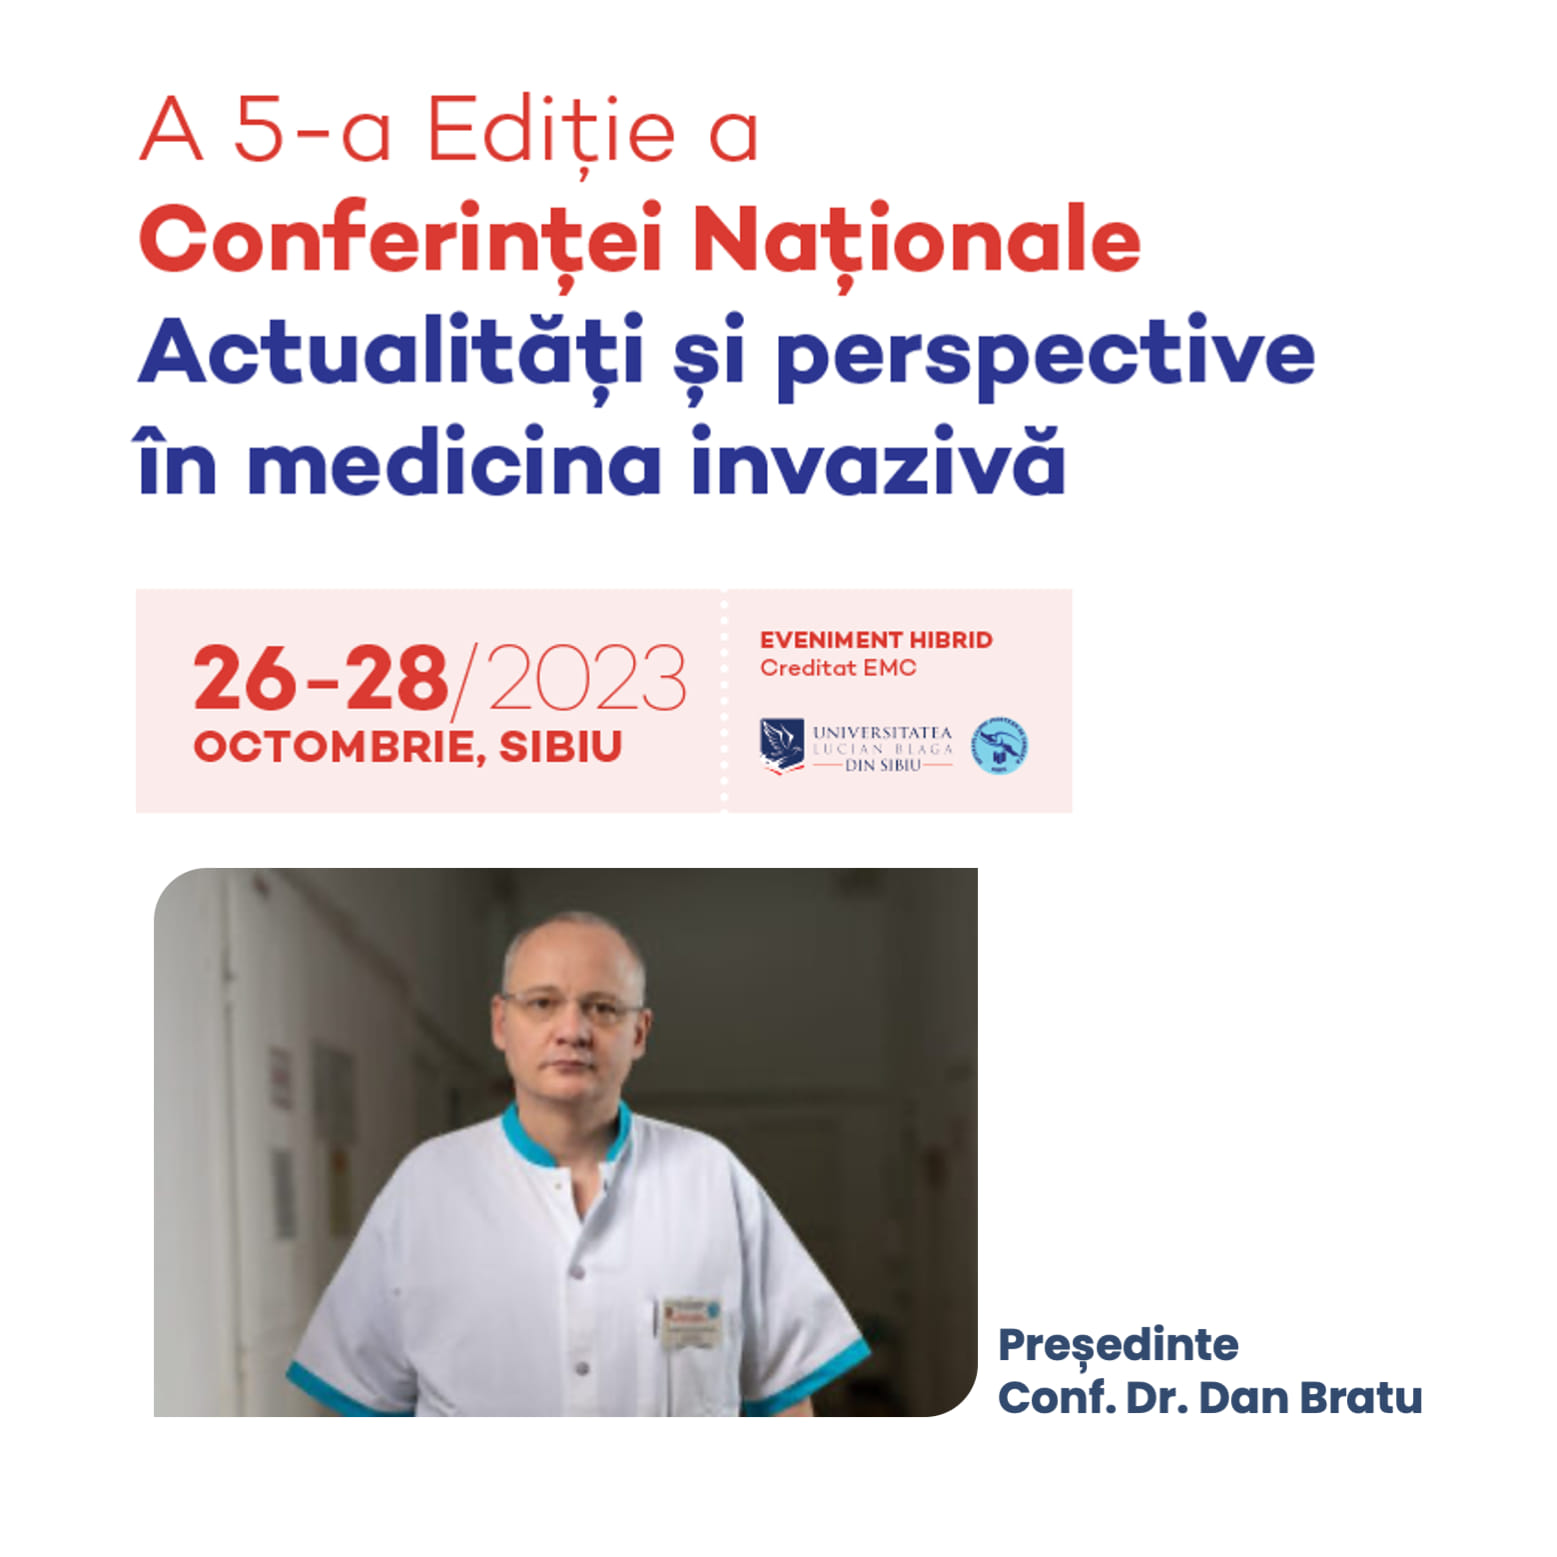  Conferința națională „Actualități și perspective în medicina invazivă” va avea loc la Sibiu, între 26-28 octombrie 